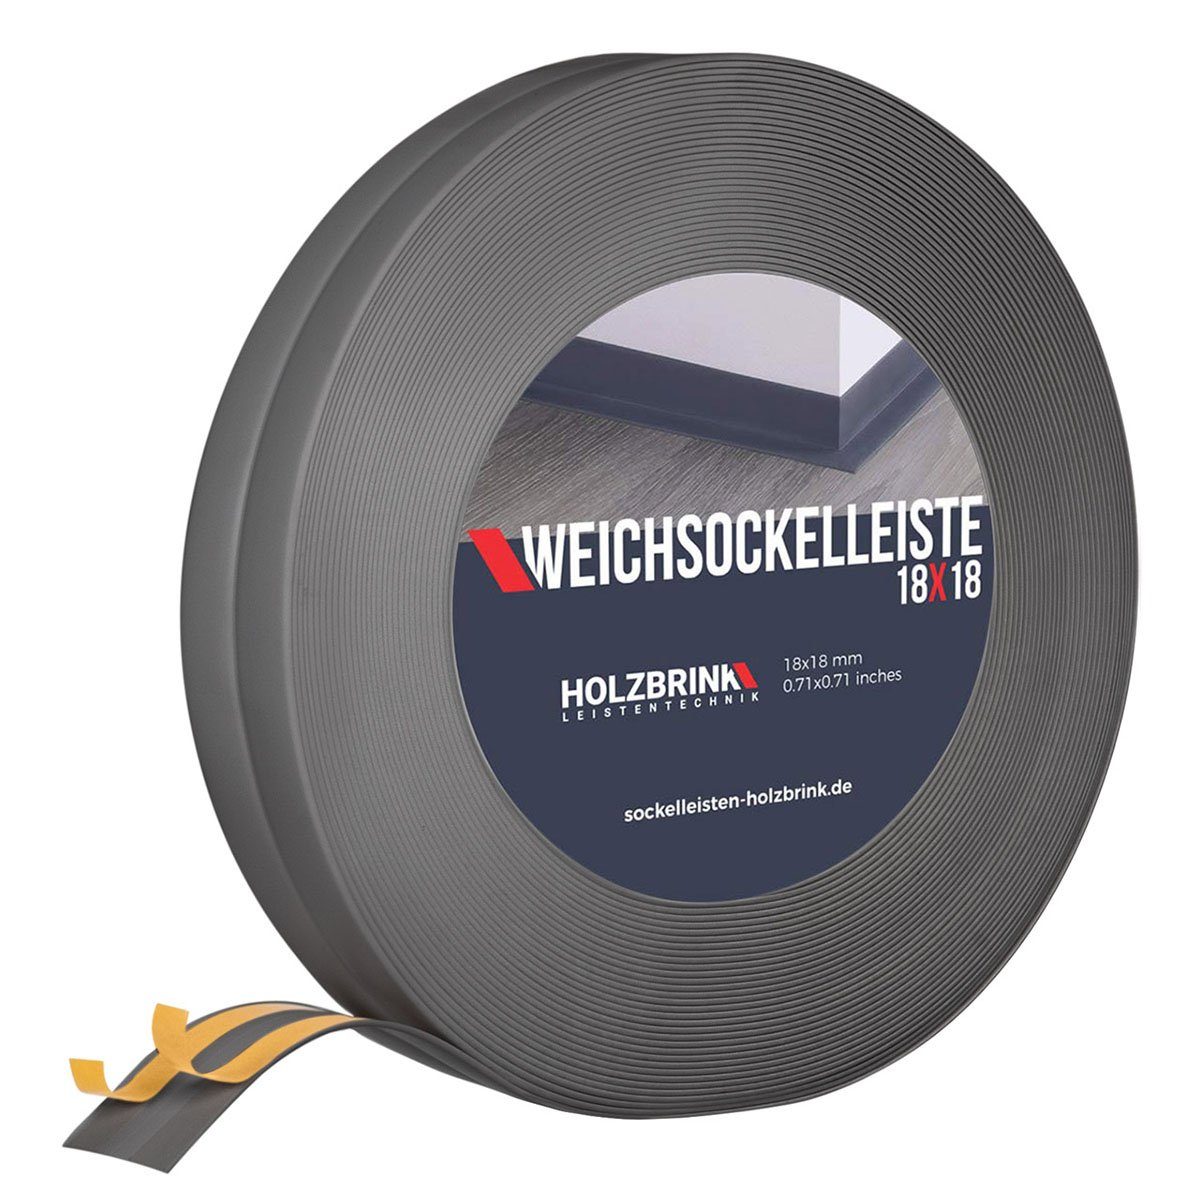 Weichsockelleiste, Flexibel Bodenleiste, Eckleiste, PVC 70x20mm